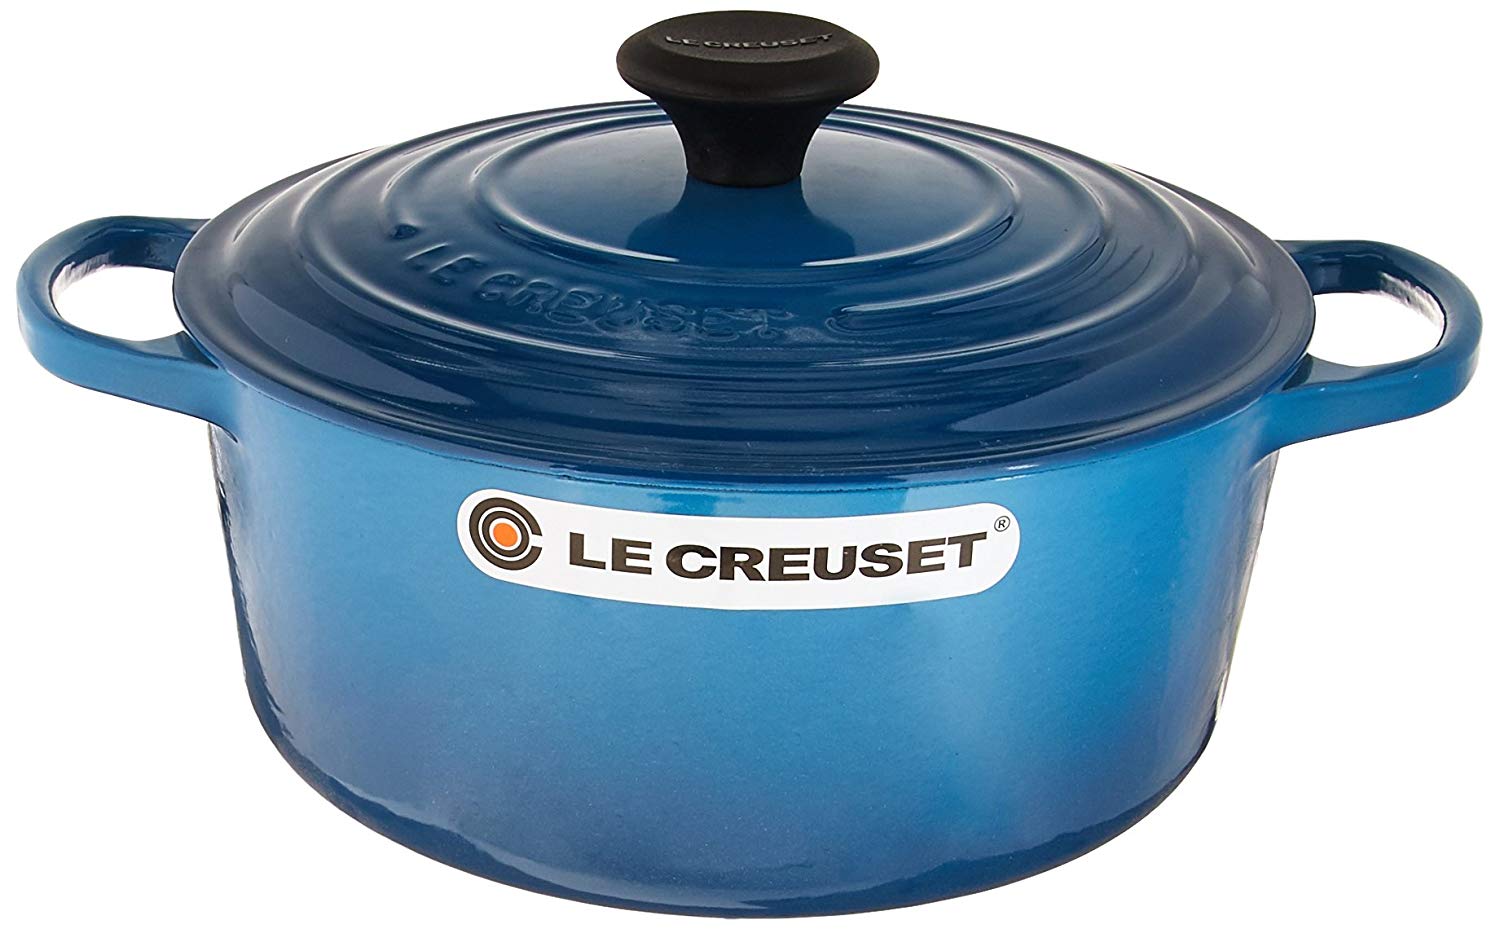 Le Creuset Round Dutch Oven, 4.5 qt